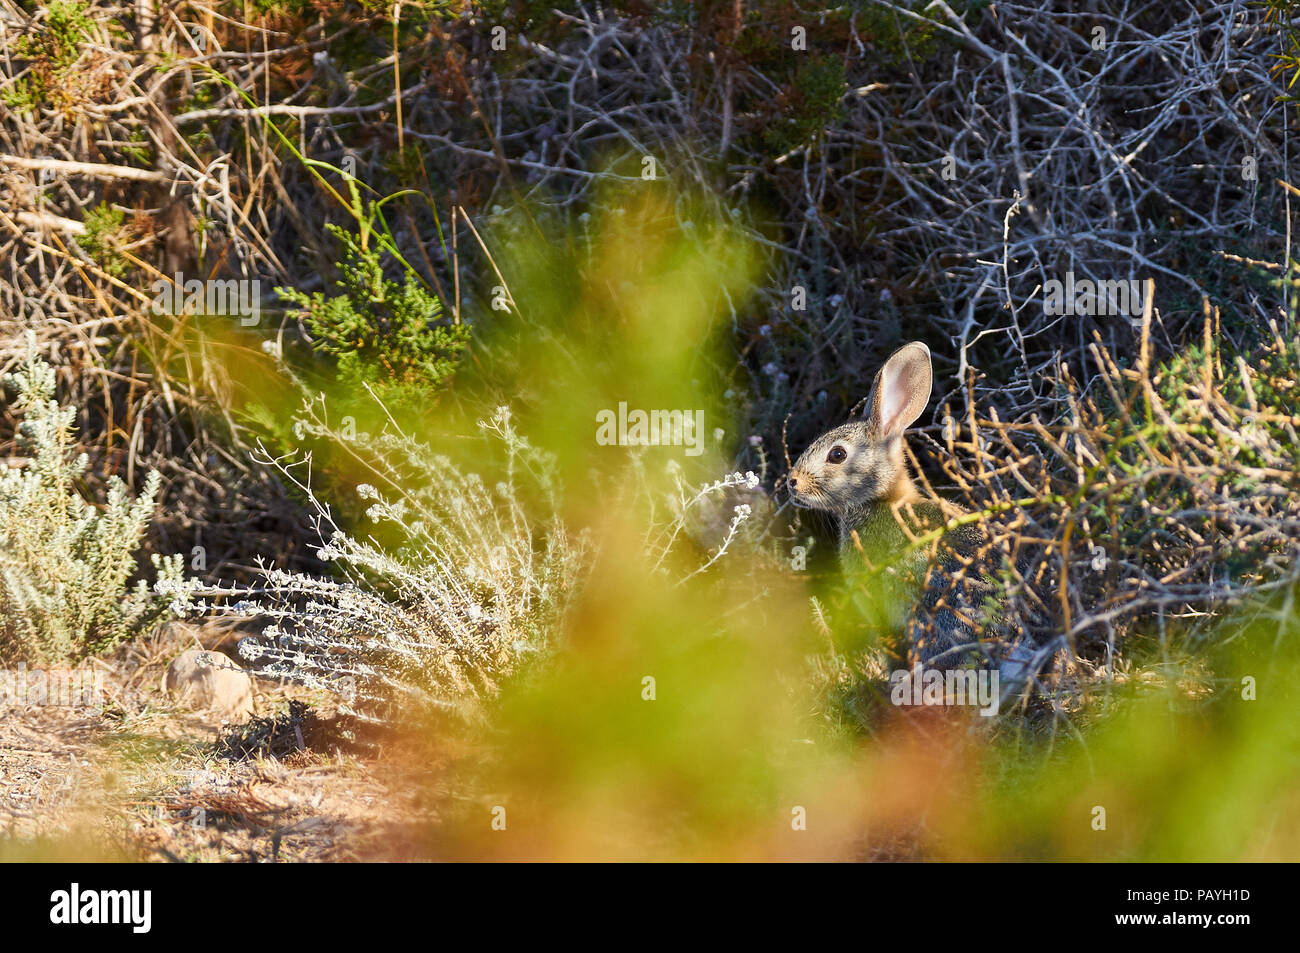 Conejo europeo (Oryctolagus cuniculus) escondido en los arbustos de Can Marroig en el Parque Natural de Ses Salines (Formentera, Islas Baleares, España) Foto de stock